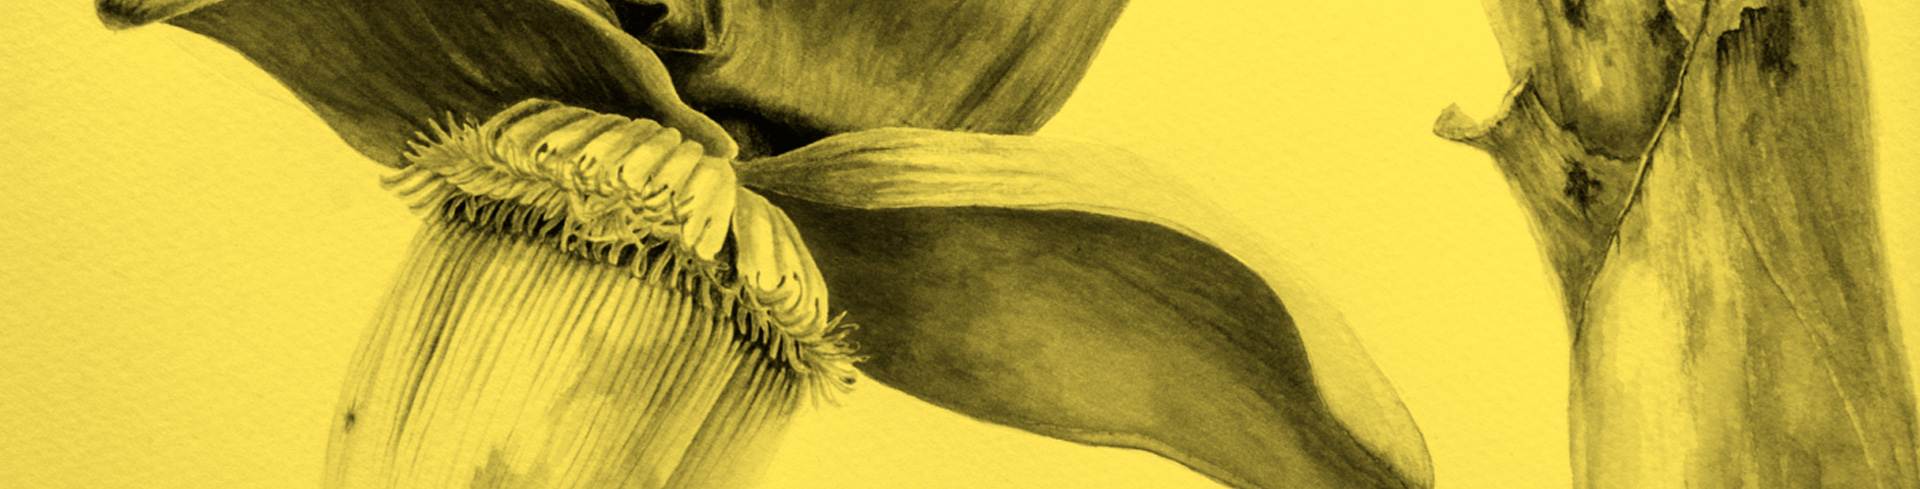 Curso Ilustración botánica: conocer las plantas a través del arte